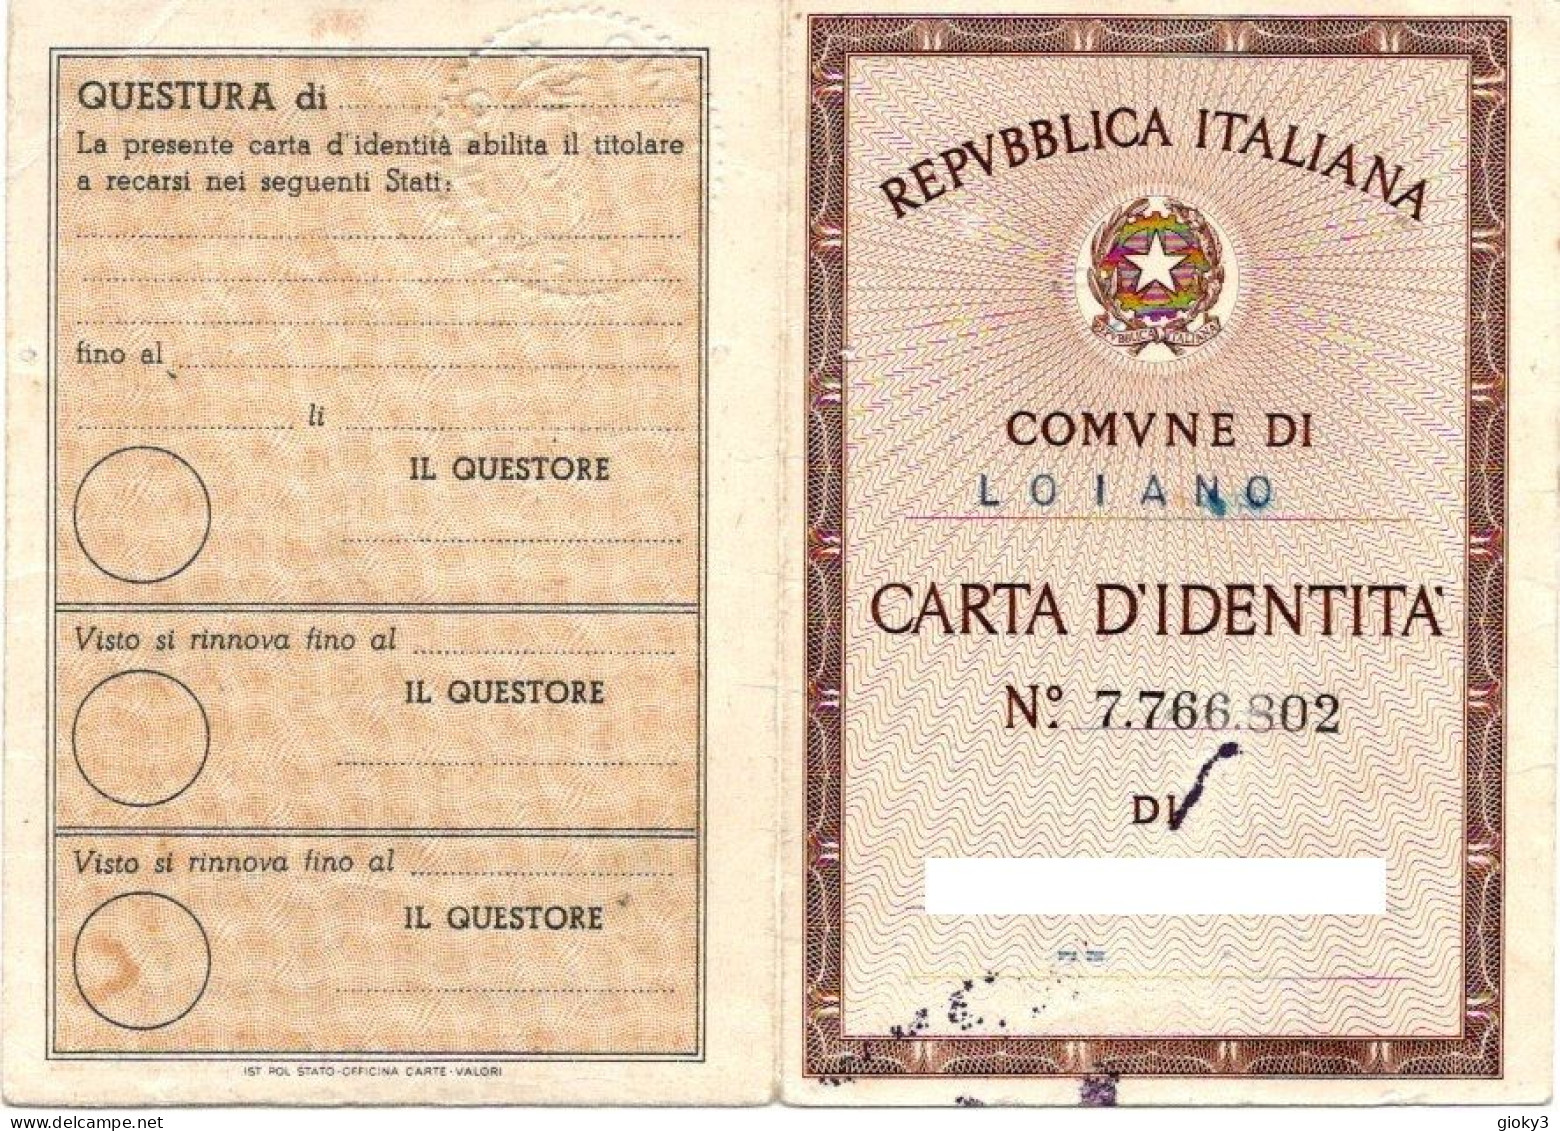 CARTA D'IDENTITA' EMESSA A LOIANO 1959 - Cachets Généralité